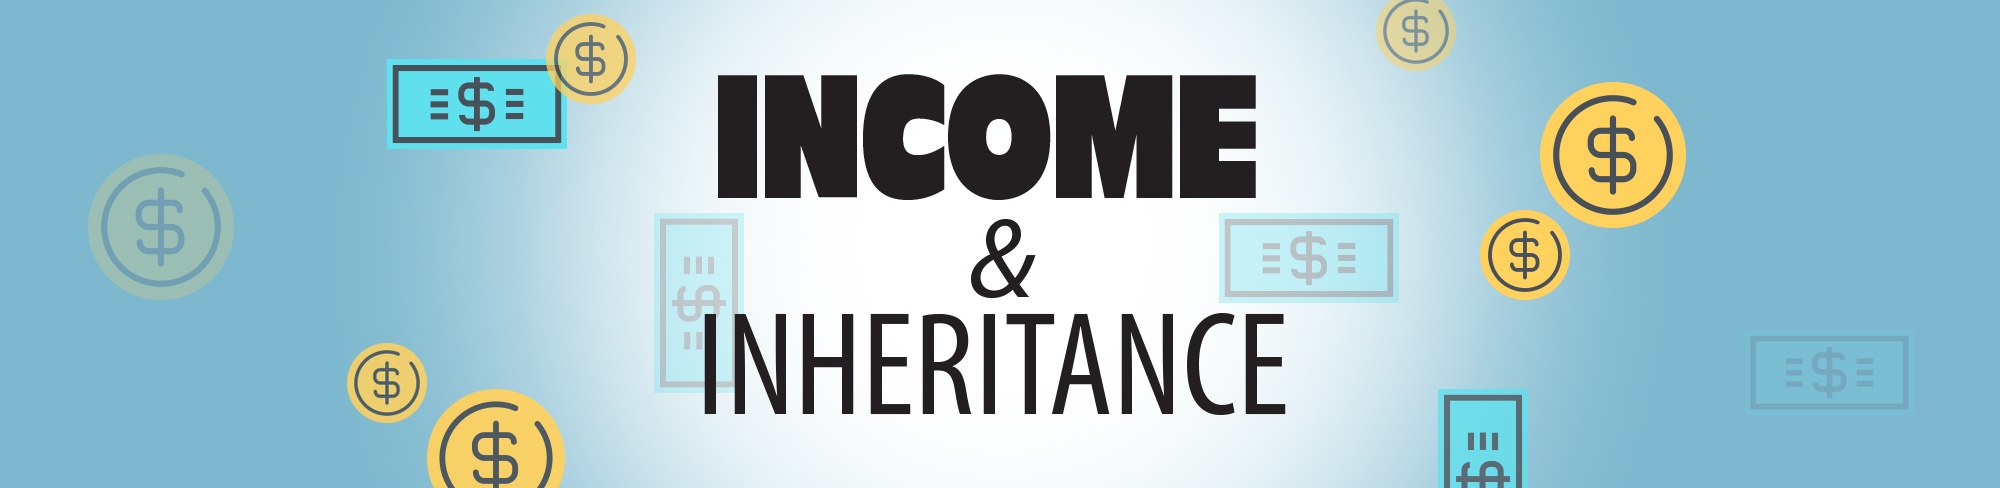 Income&Inheritance_slider.jpg